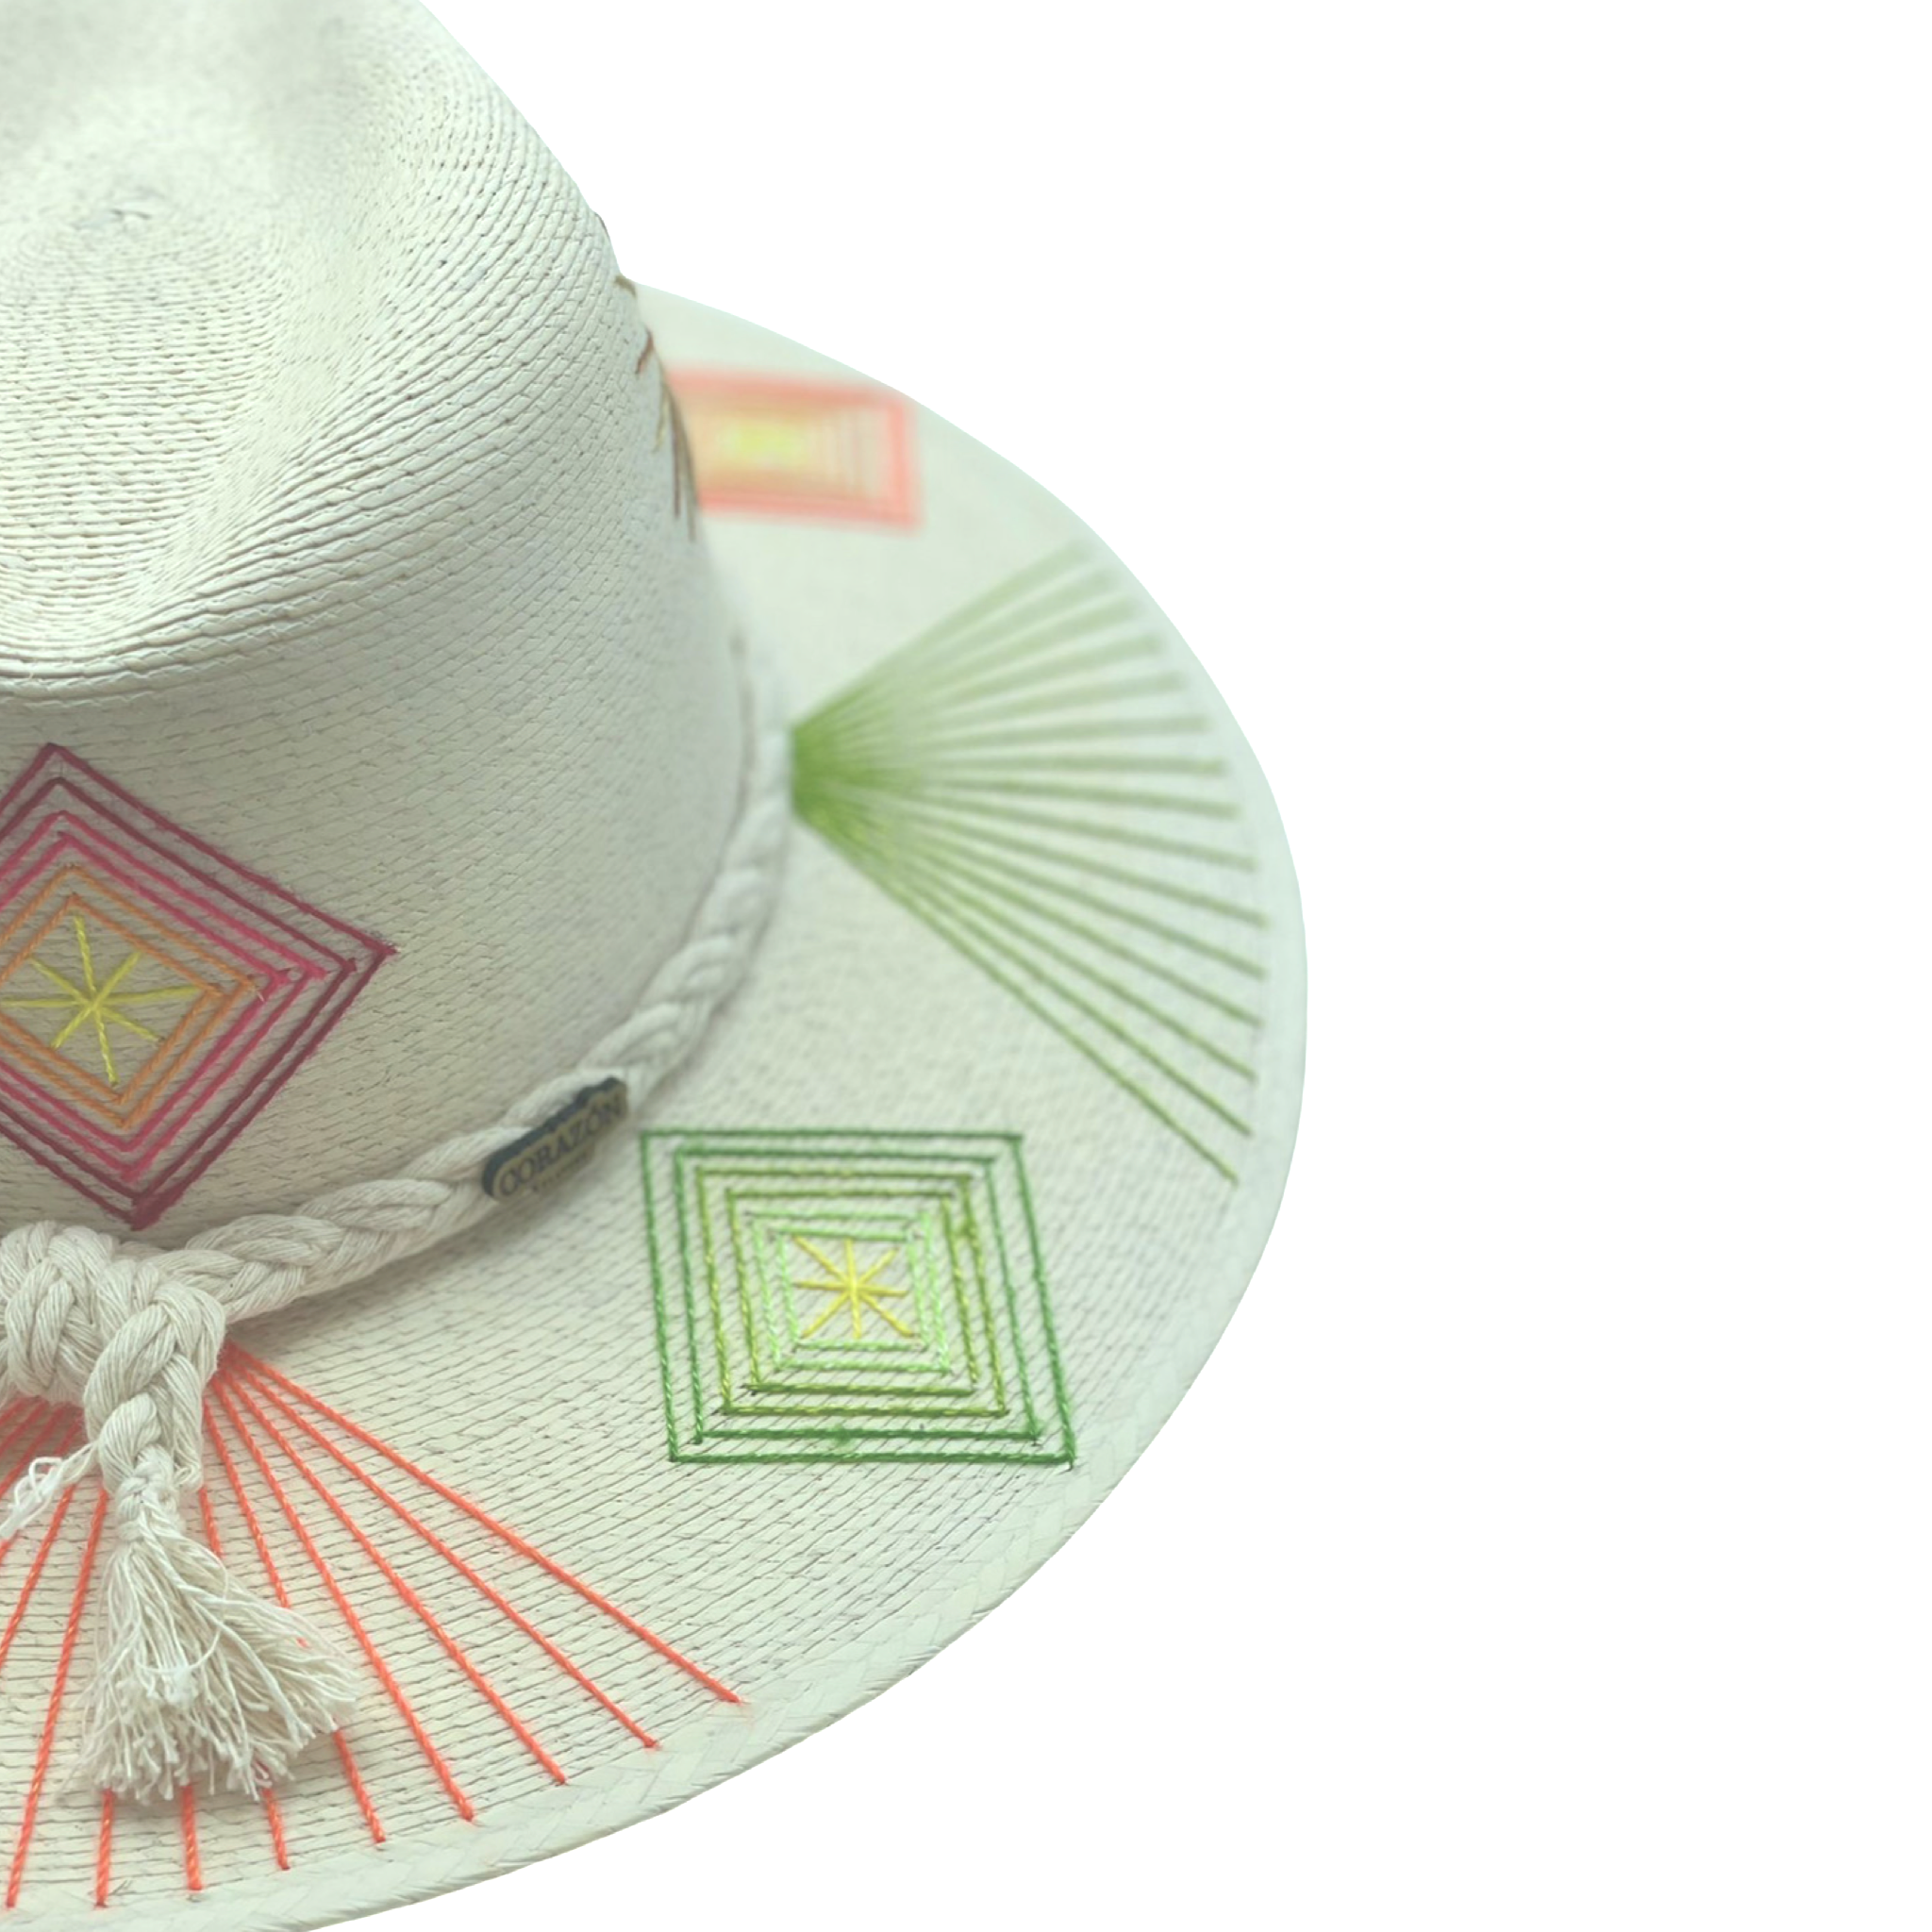 Exclusive Pura Vida Hat by Corazon Playero - Preorder